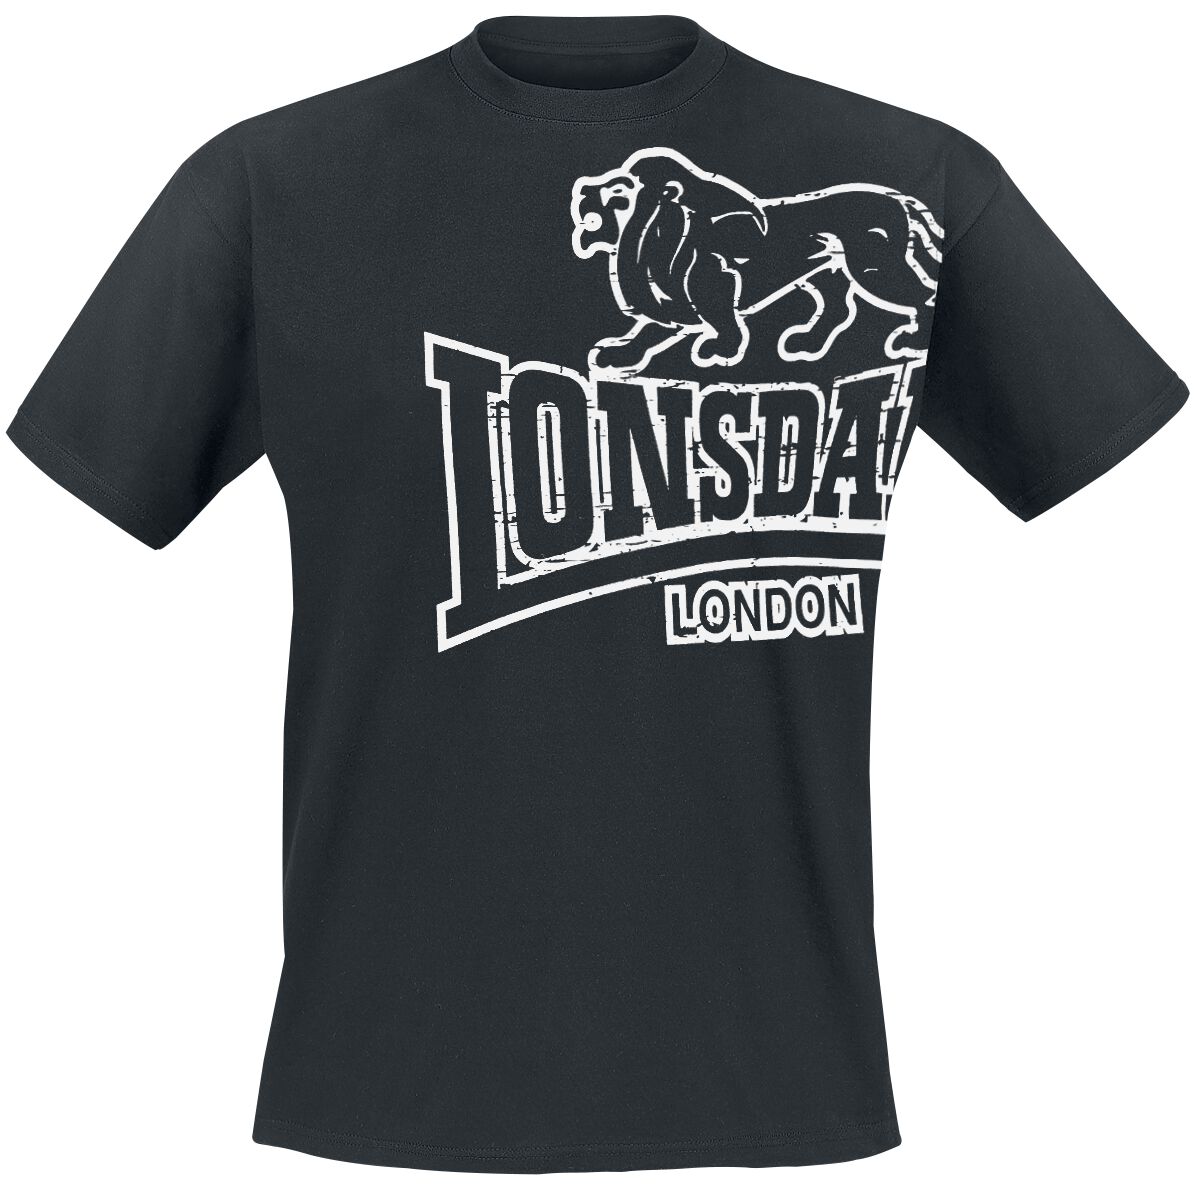 Lonsdale London T-Shirt - Langsett - M bis 5XL - für Männer - Größe 5XL - schwarz